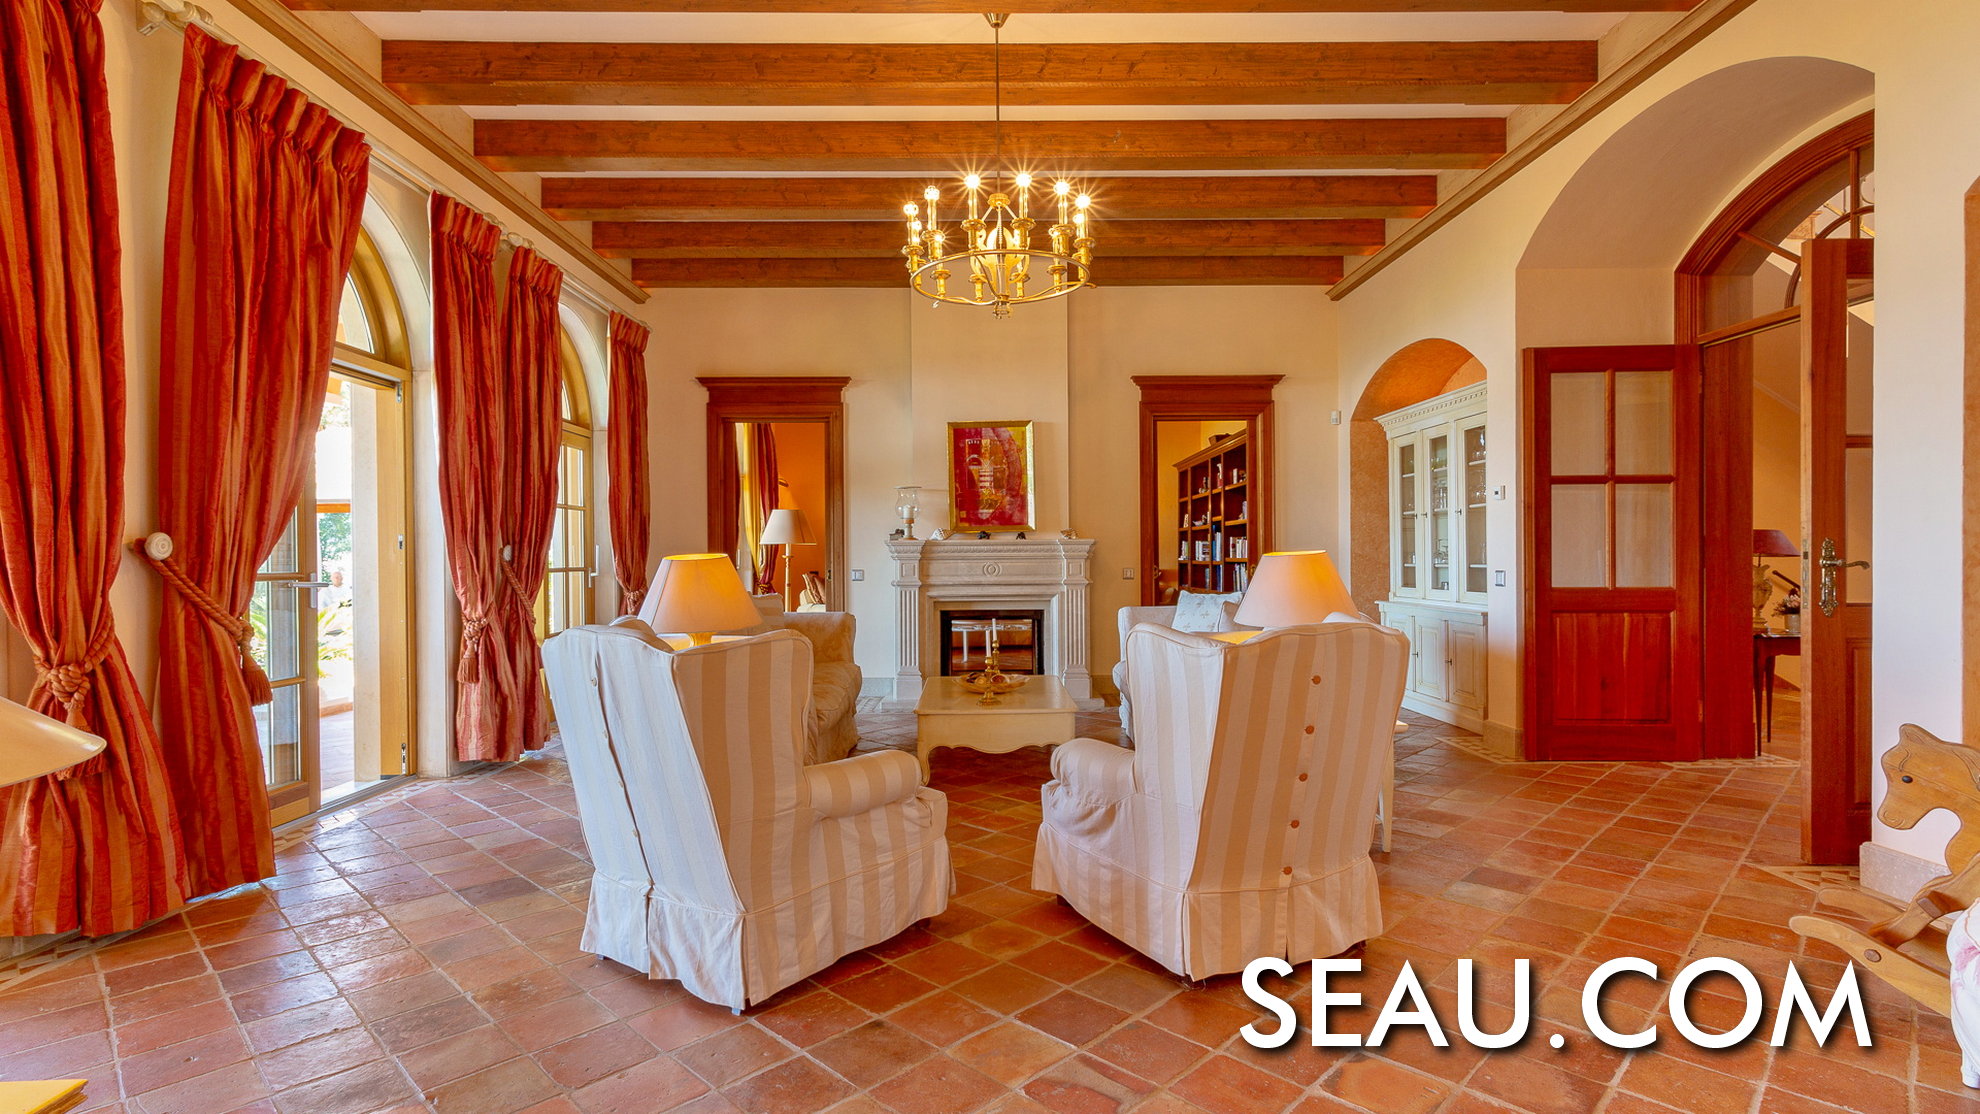 Das Wohnzimmer ist ein einladender Raum, umgeben von edlen Holz- und Natursteinmaterialien.